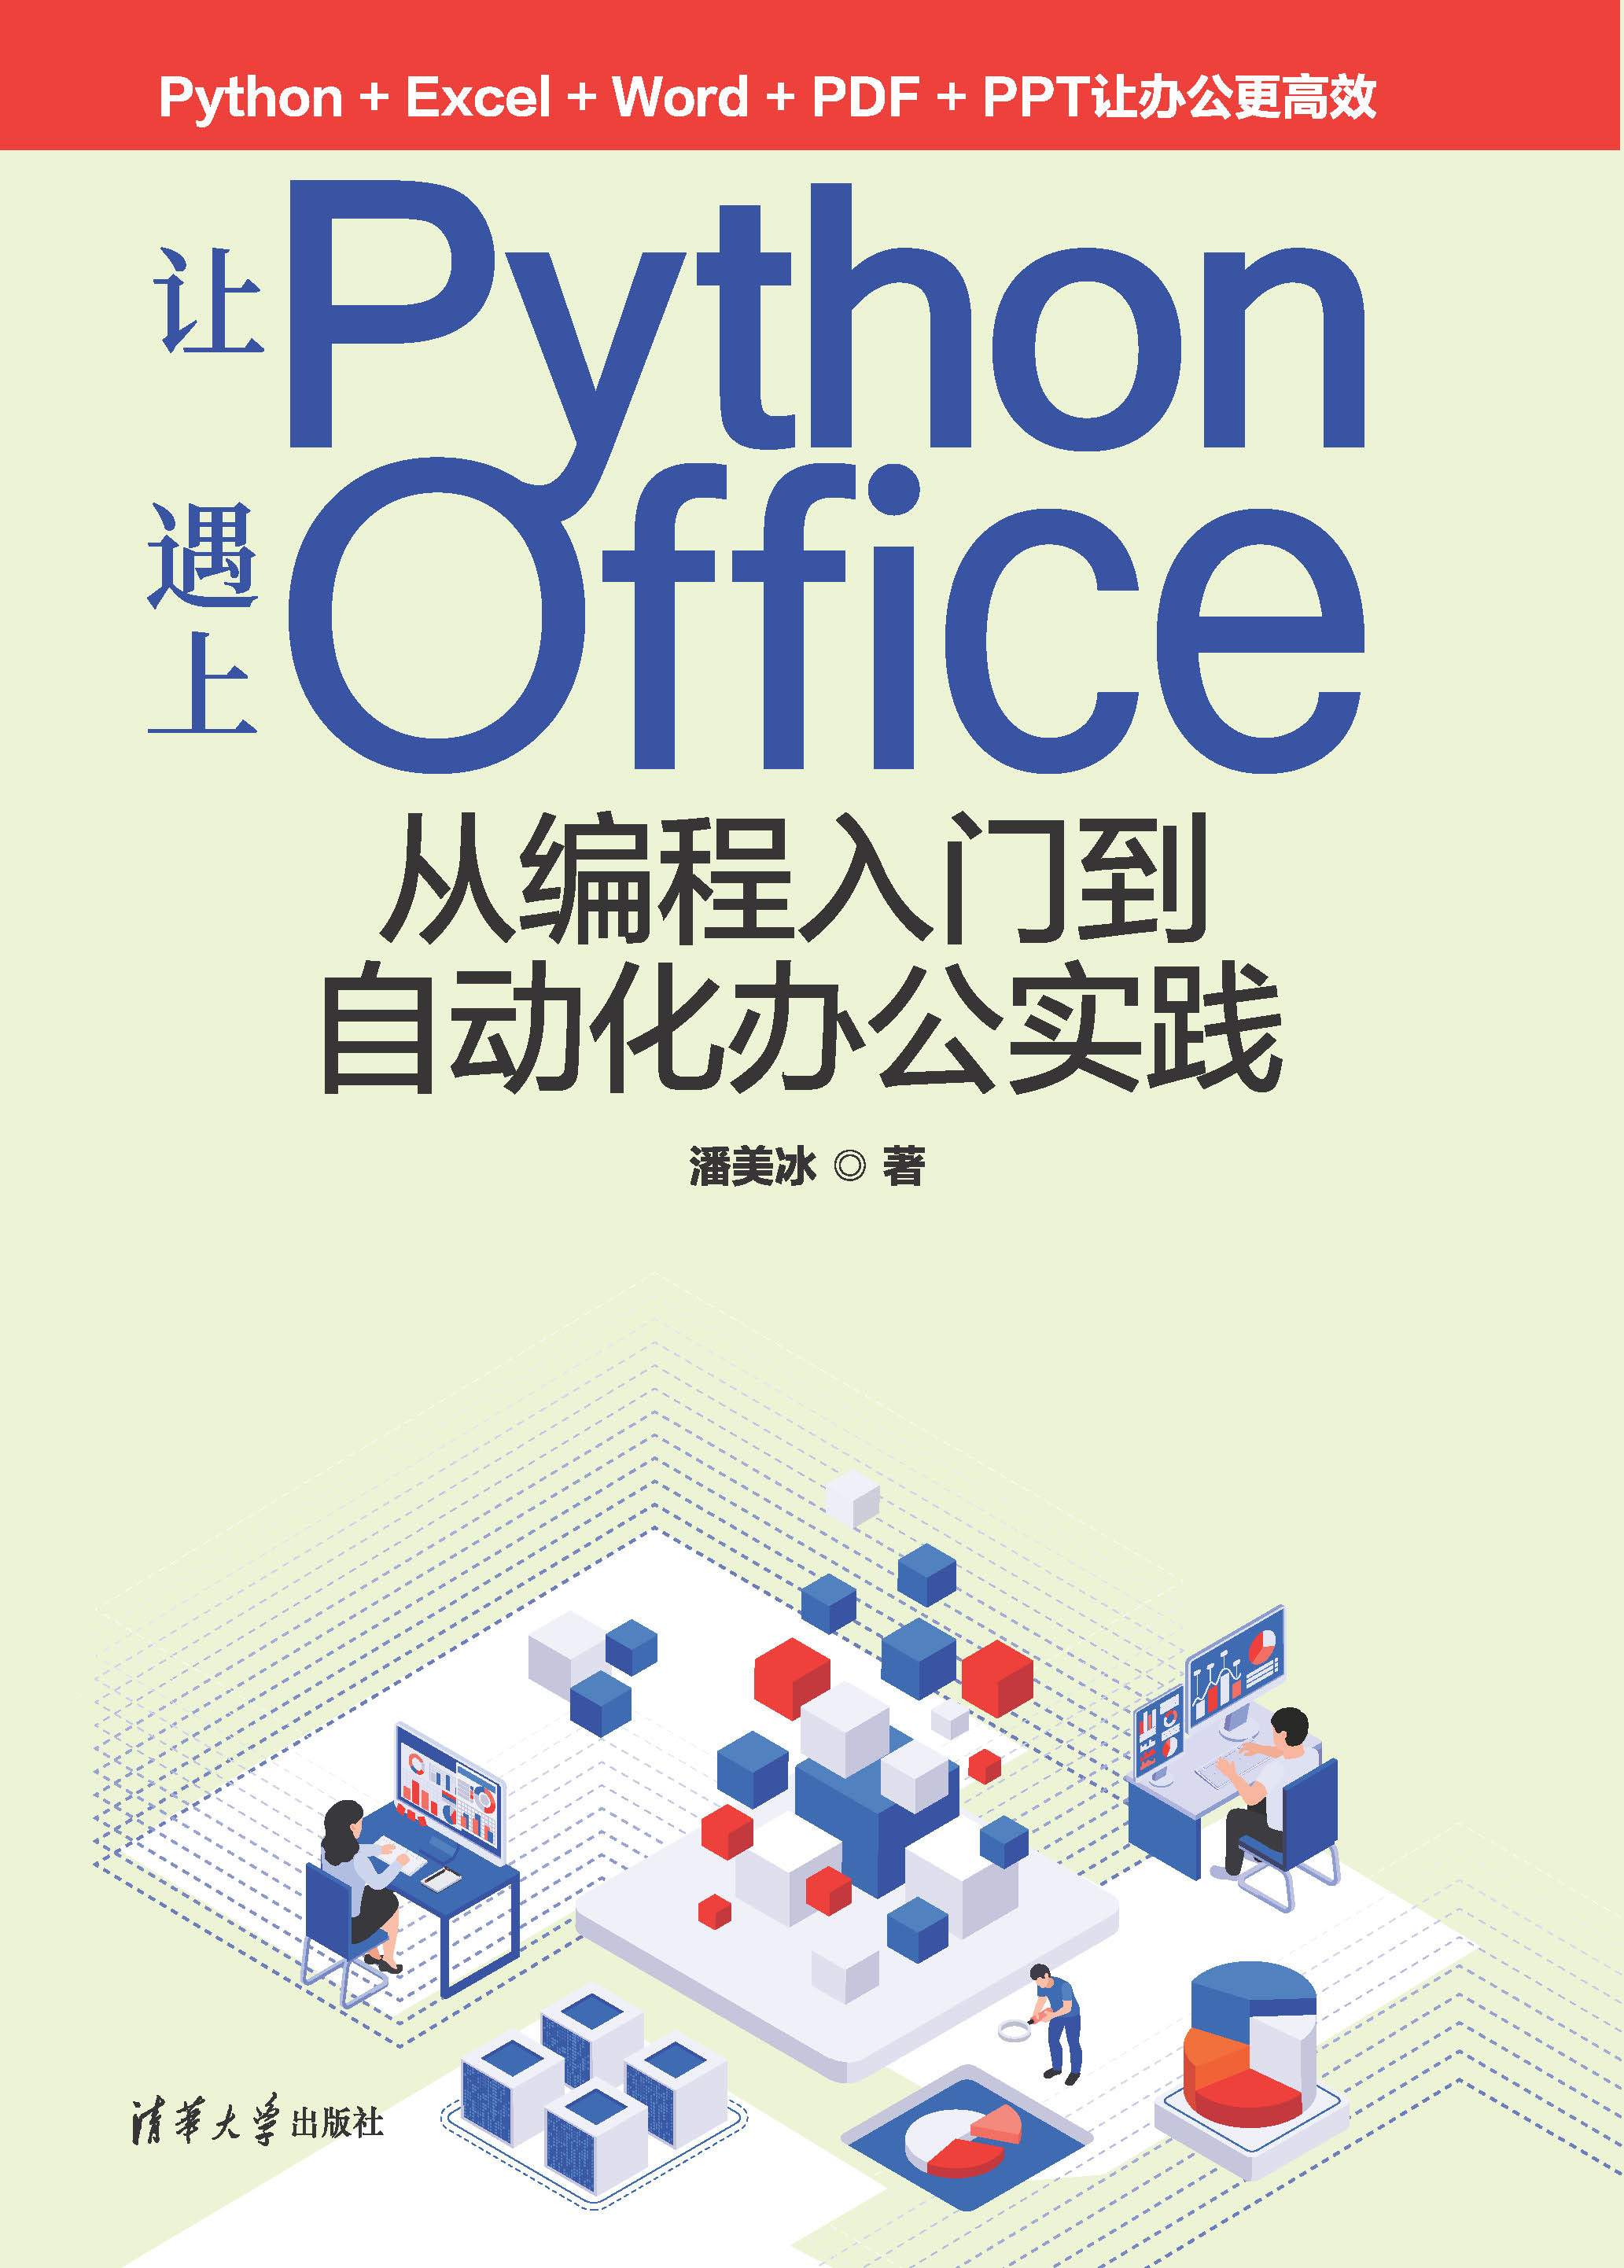 让Python遇上Office——从编程入门到自动化办公实践